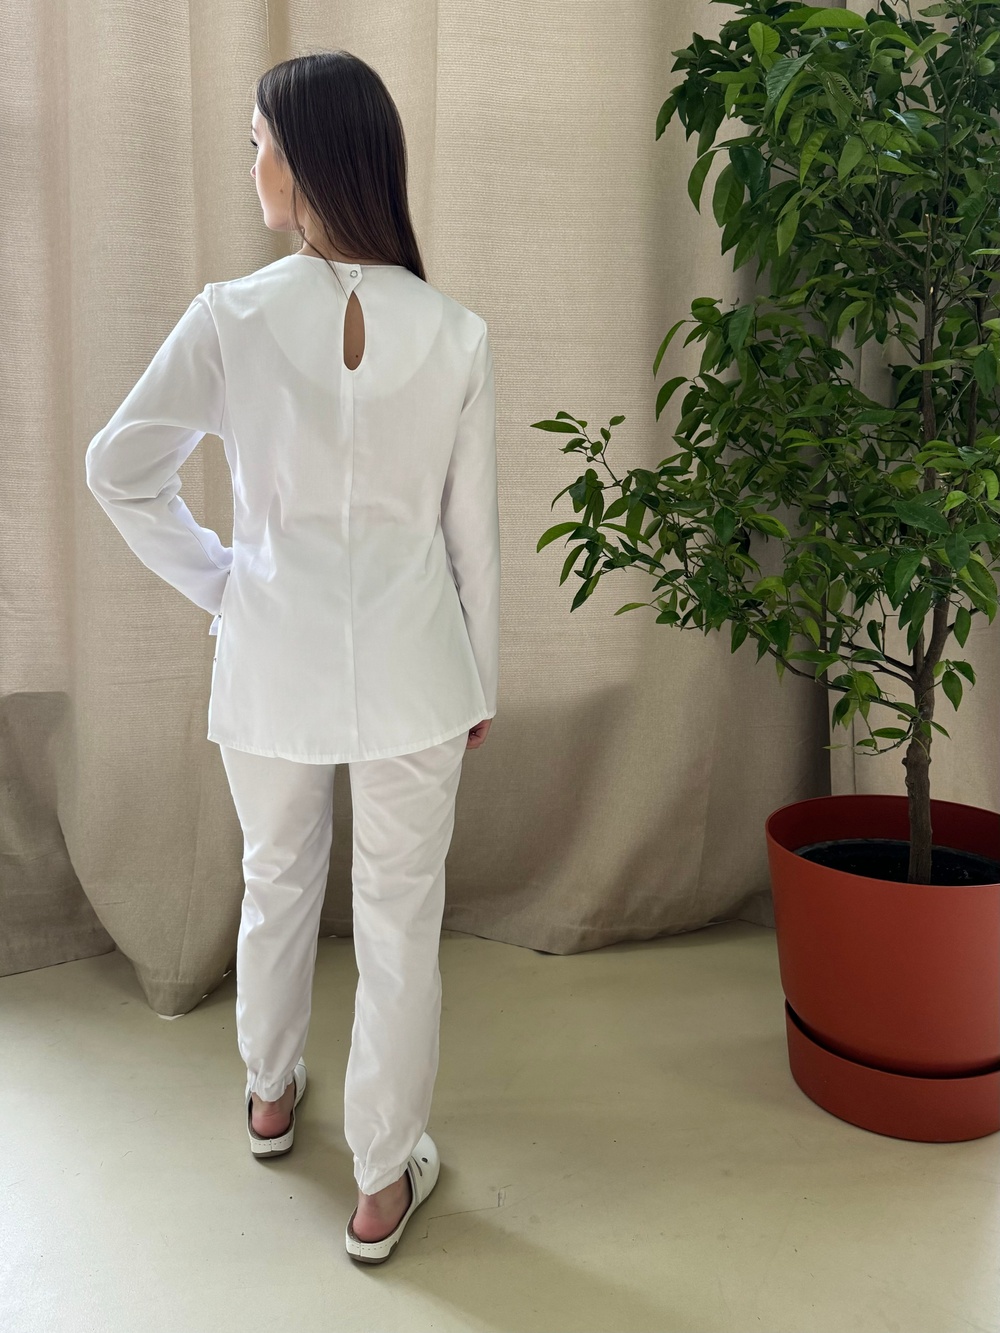 Біла медична куртка арт.20-08 з вишивкою рентген